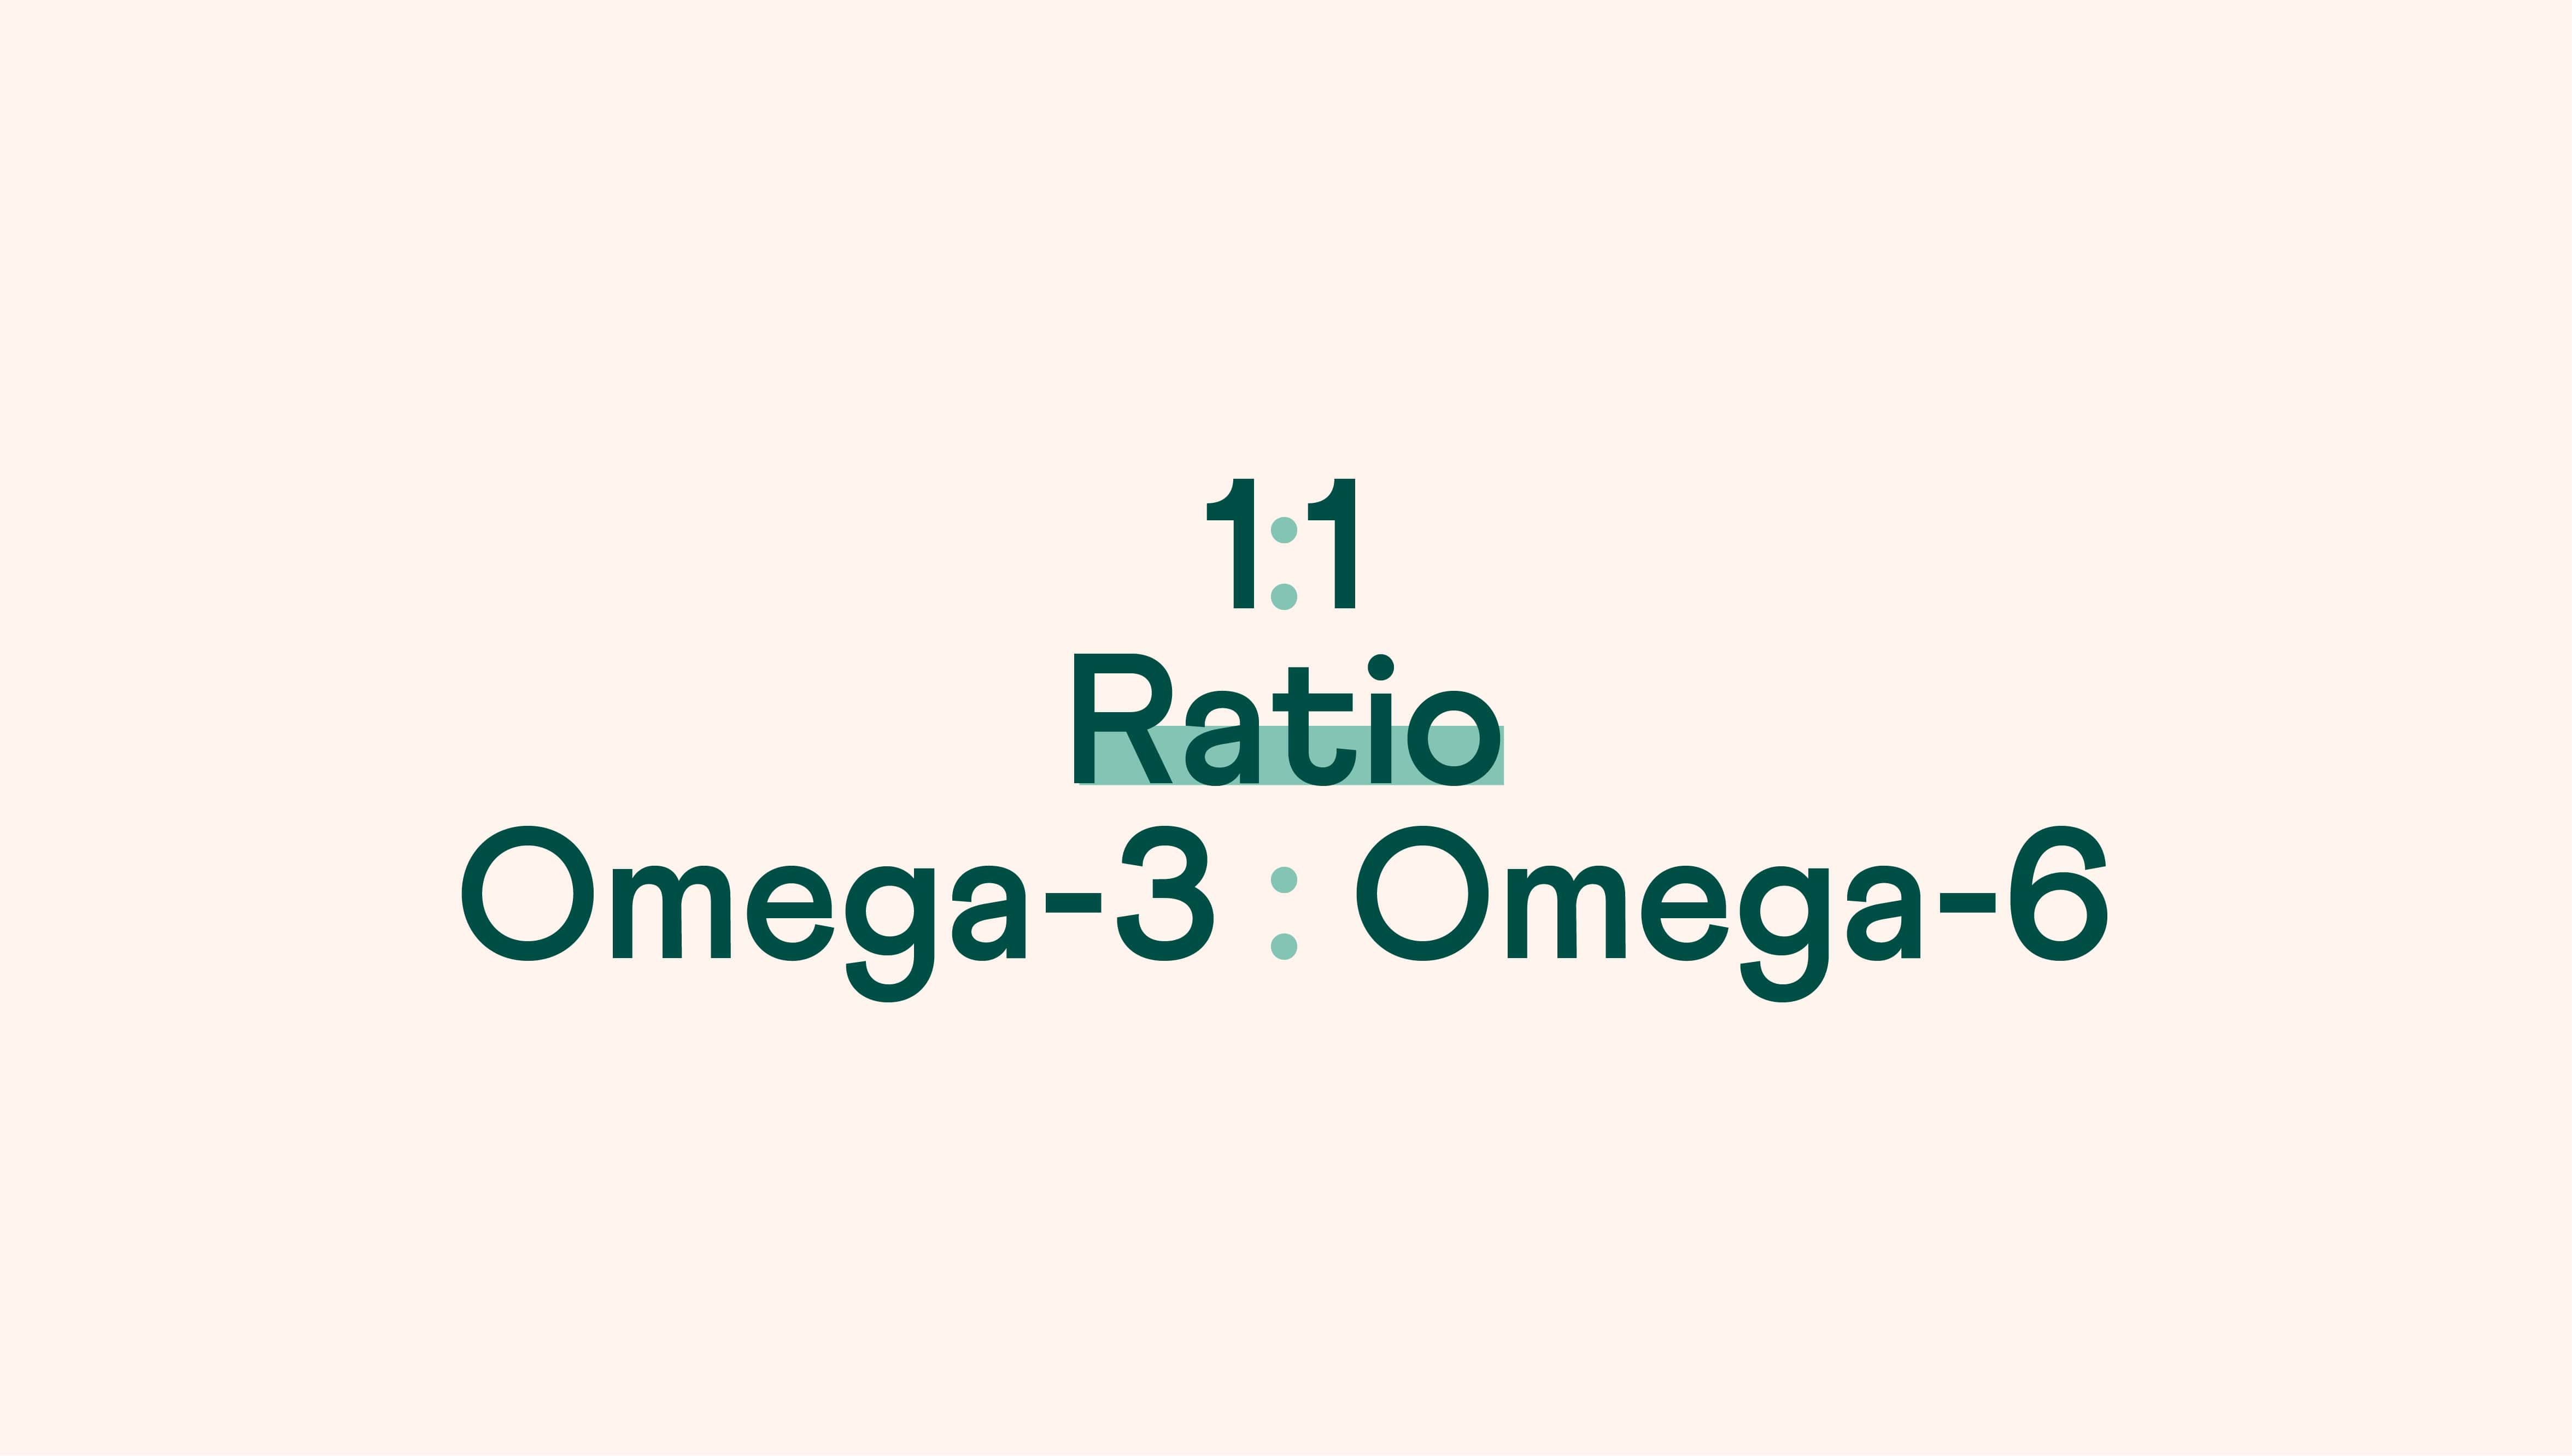 Omega-3 to Omega-6 Ratio